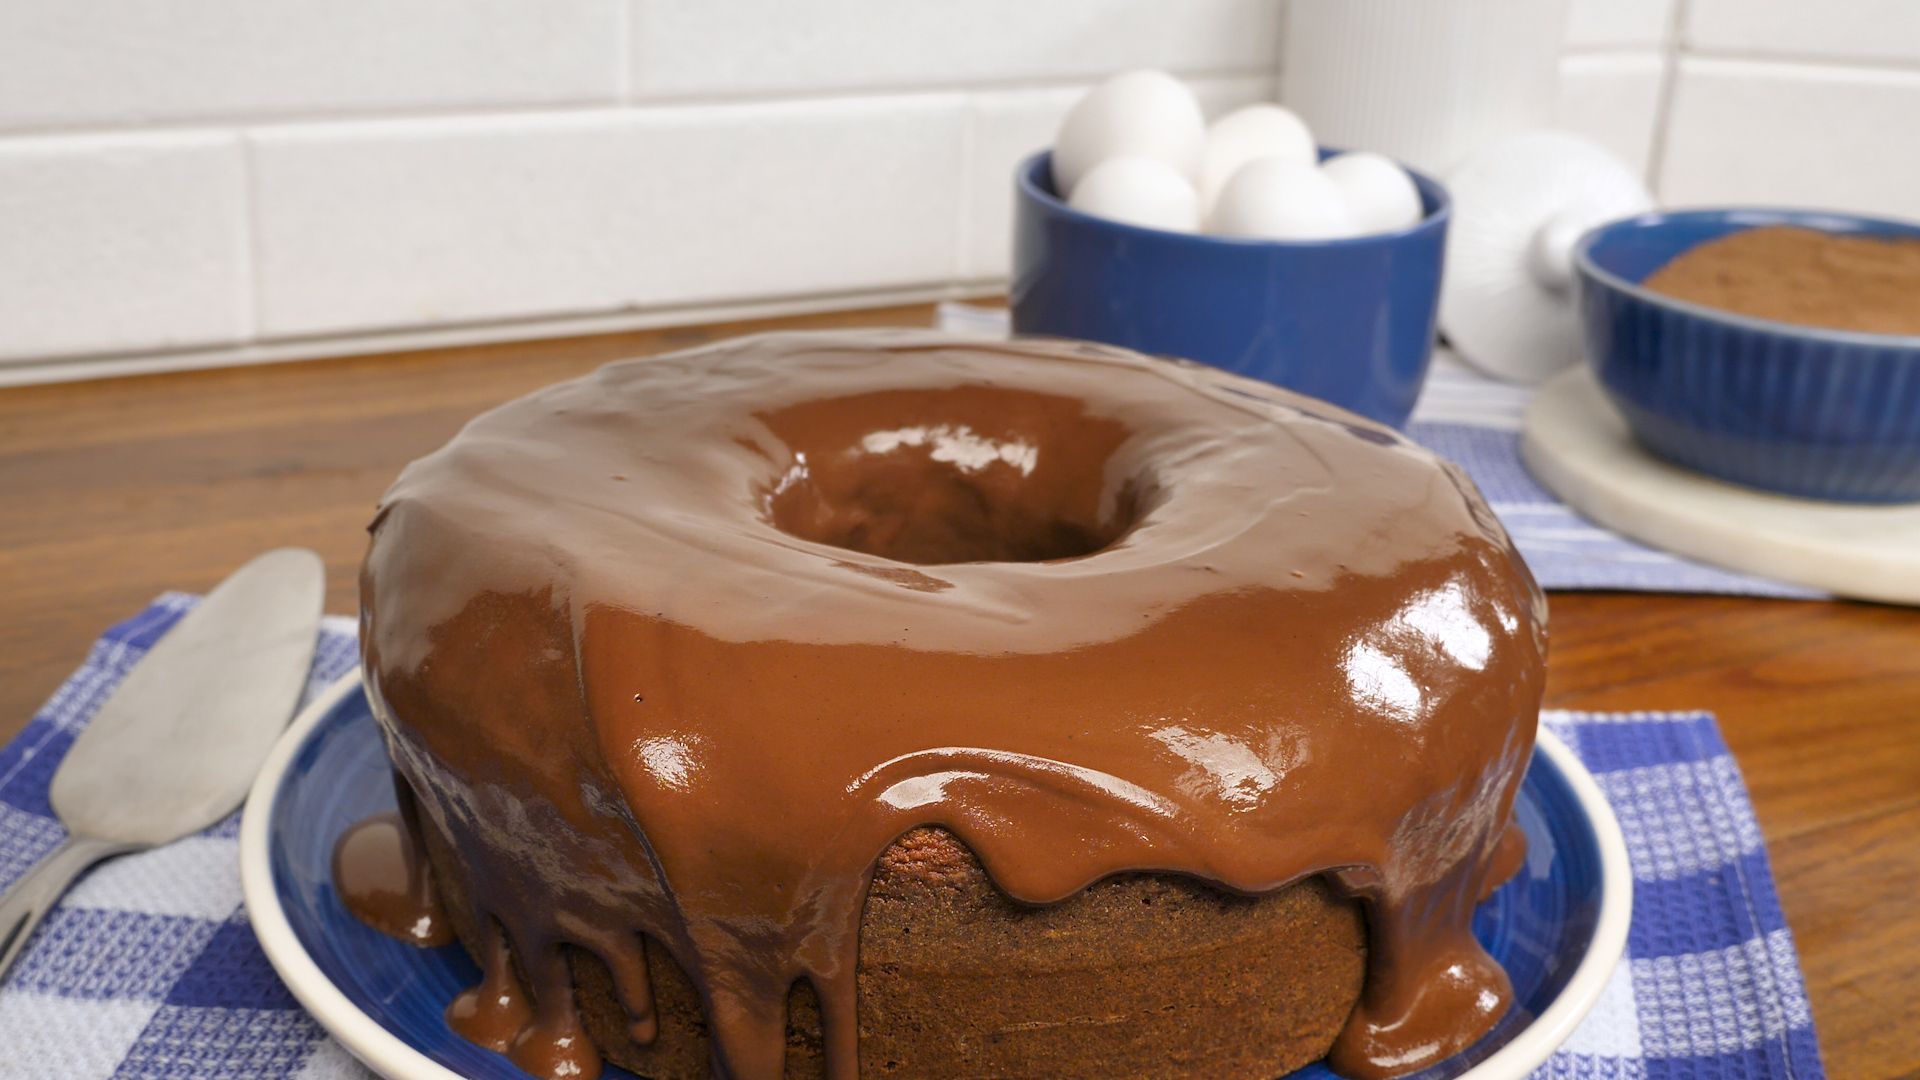 Bolo na Air fryer: Aprenda 10 receitas deliciosas de bolos feitos na  fritadeira elétrica - Receitas Rápidas e Fáceis